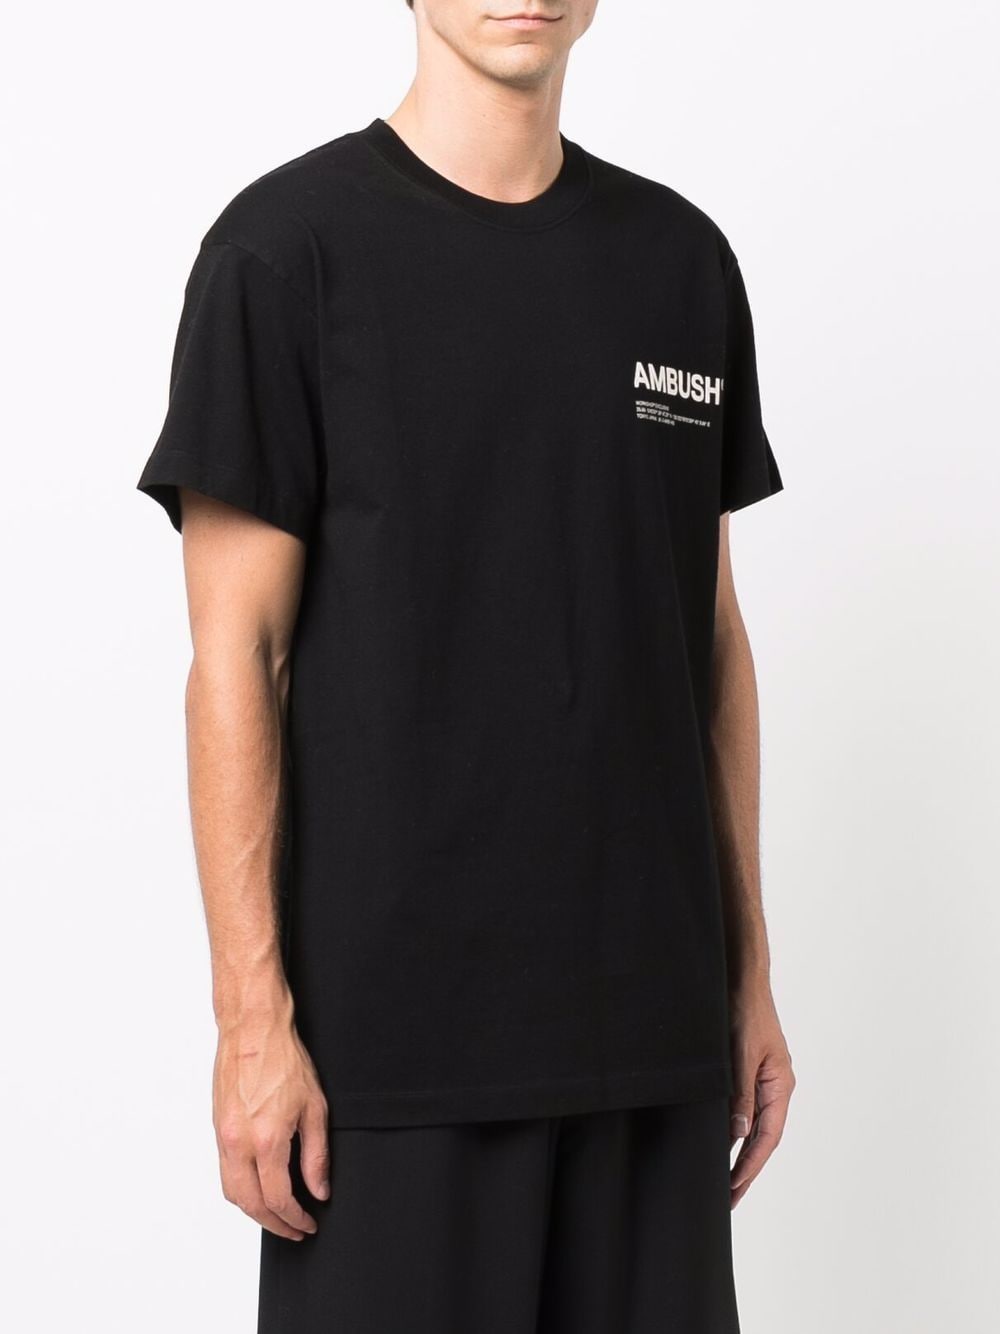 Ambush Logo short sleeve shirt black